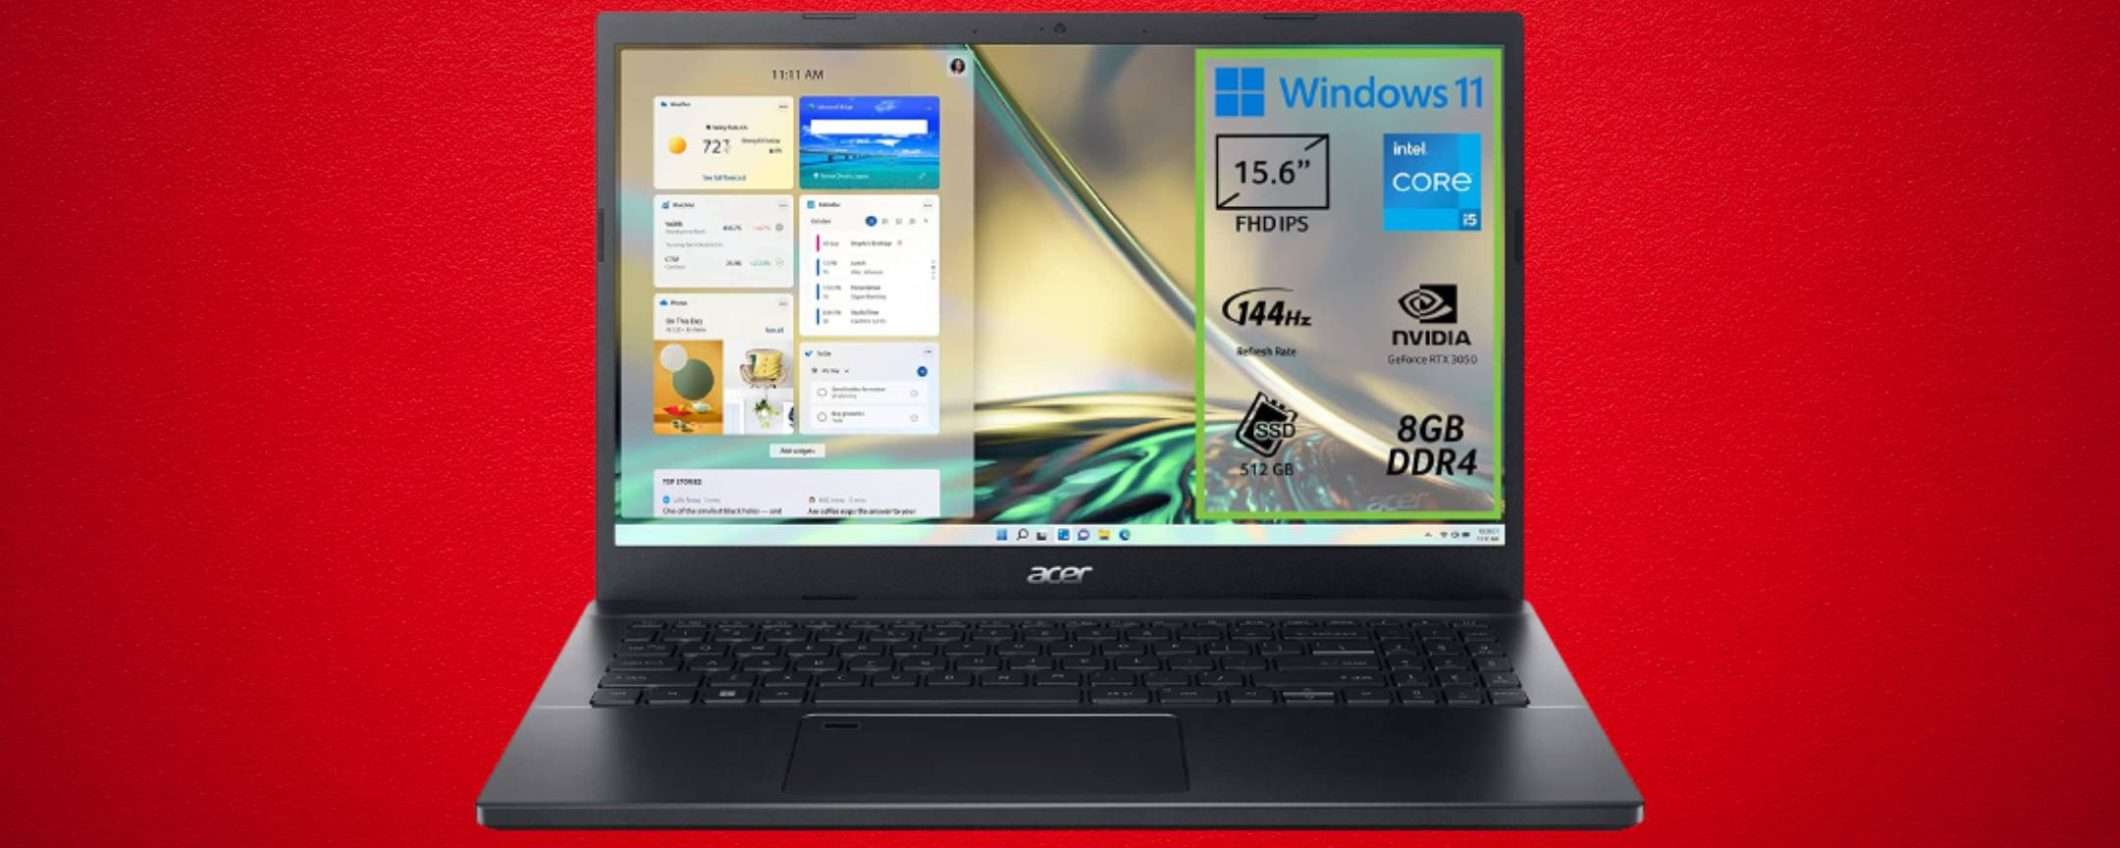 Acer Aspire 7: potente laptop da gaming con RTX 3050 a meno di 800€